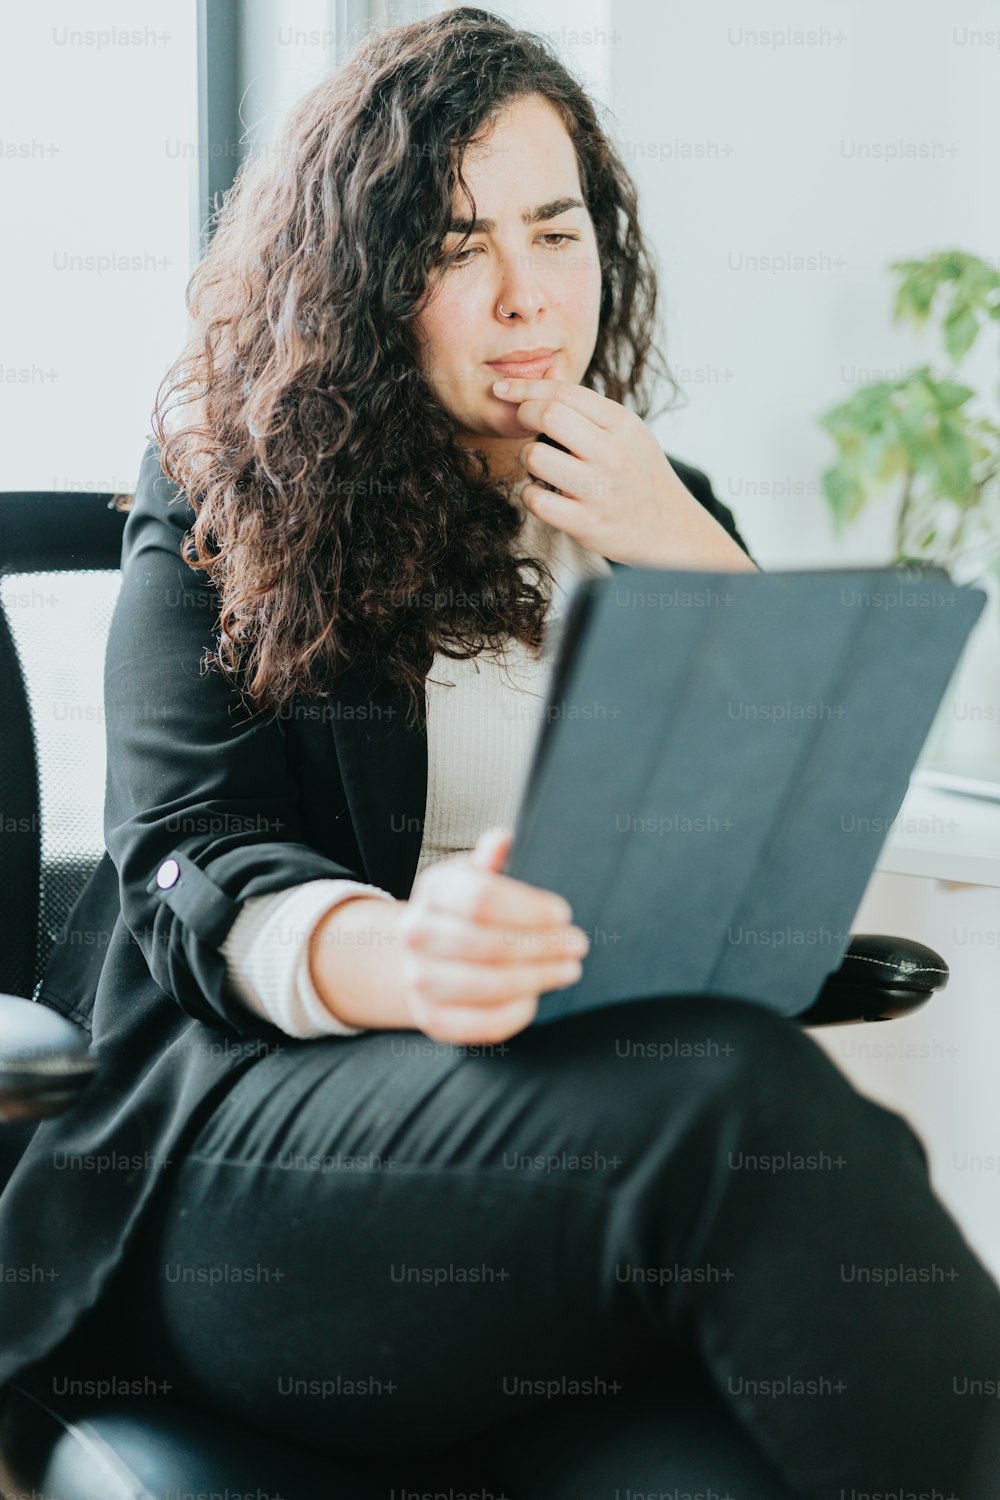 Eine Frau sitzt auf einem Stuhl und hält ein Tablet in der Hand